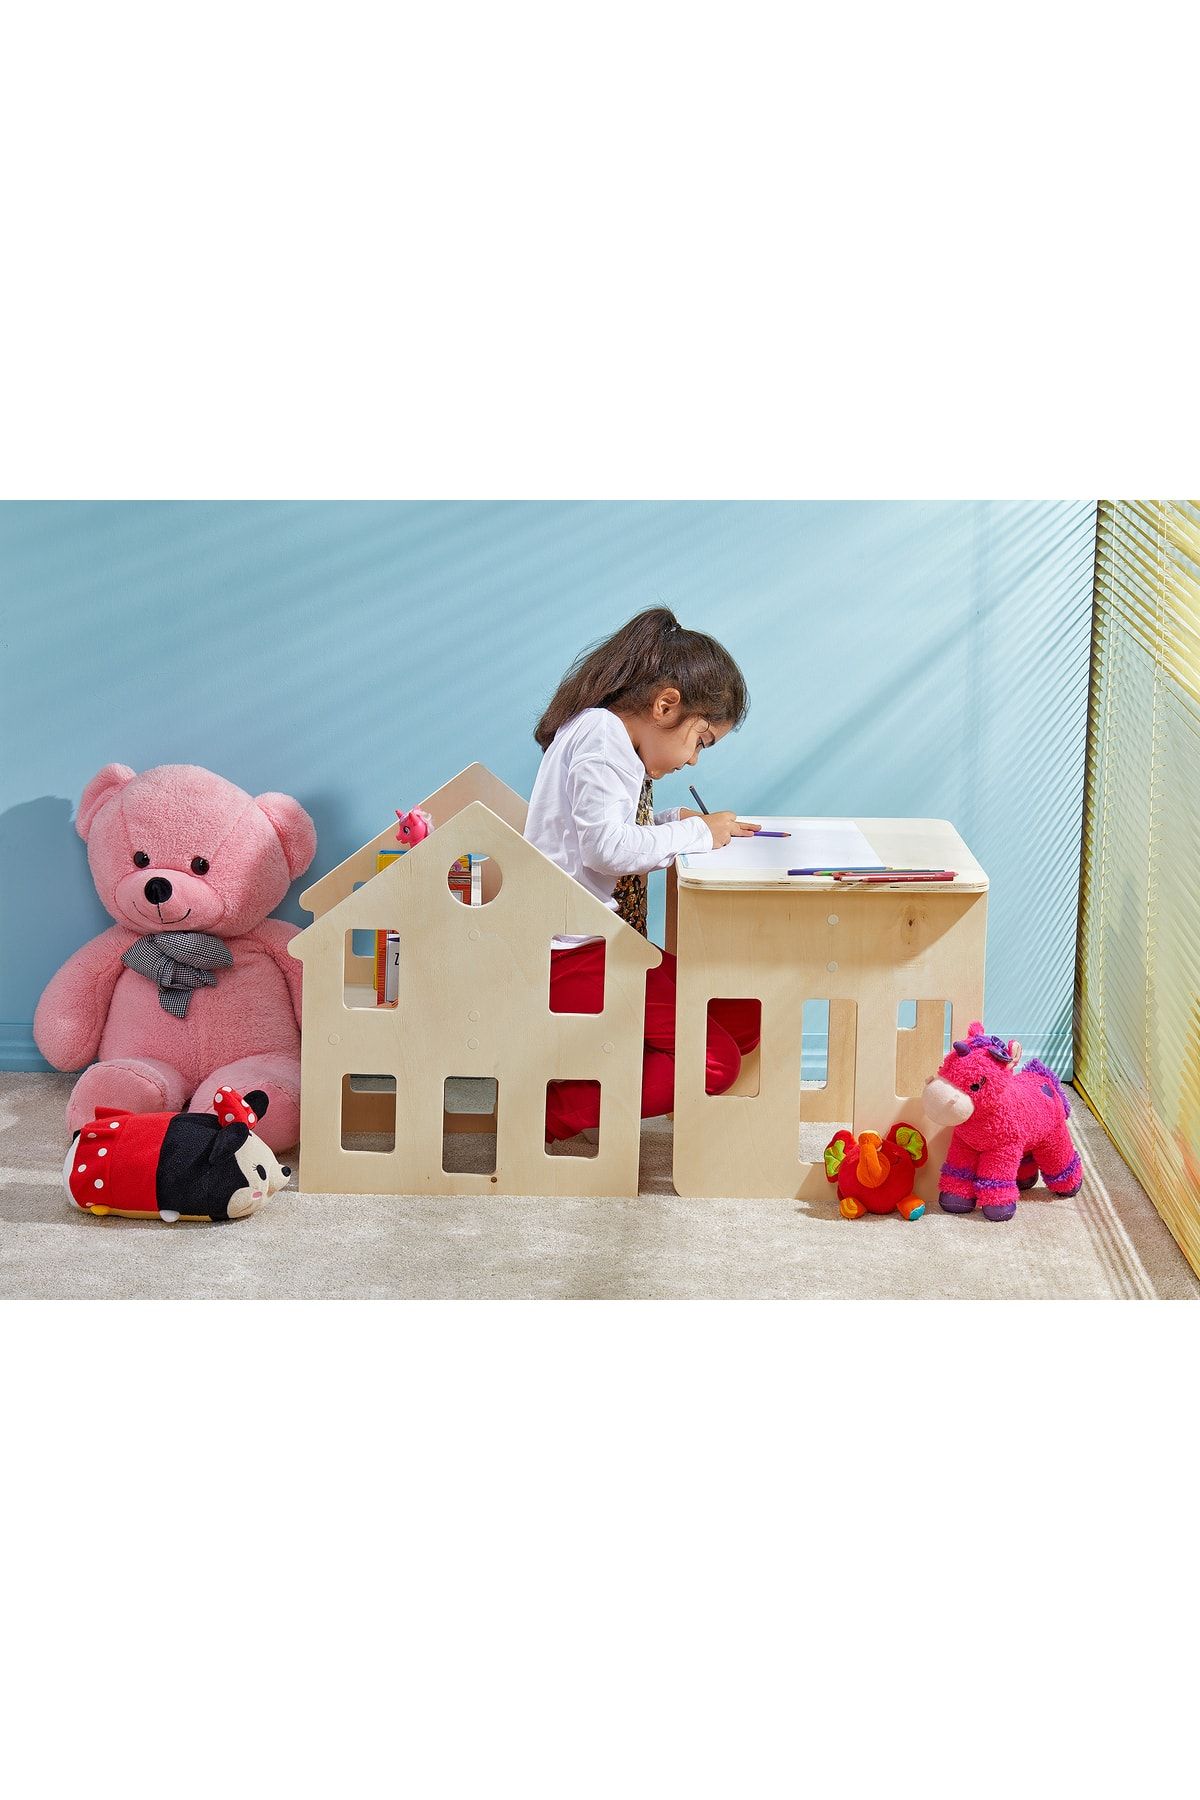 enio design Çocuk Montessori Ahşap Masa, Çocuk Oyun Aktivite ve Etkinlik Masası, Çocuk Ders Çalışma Masası